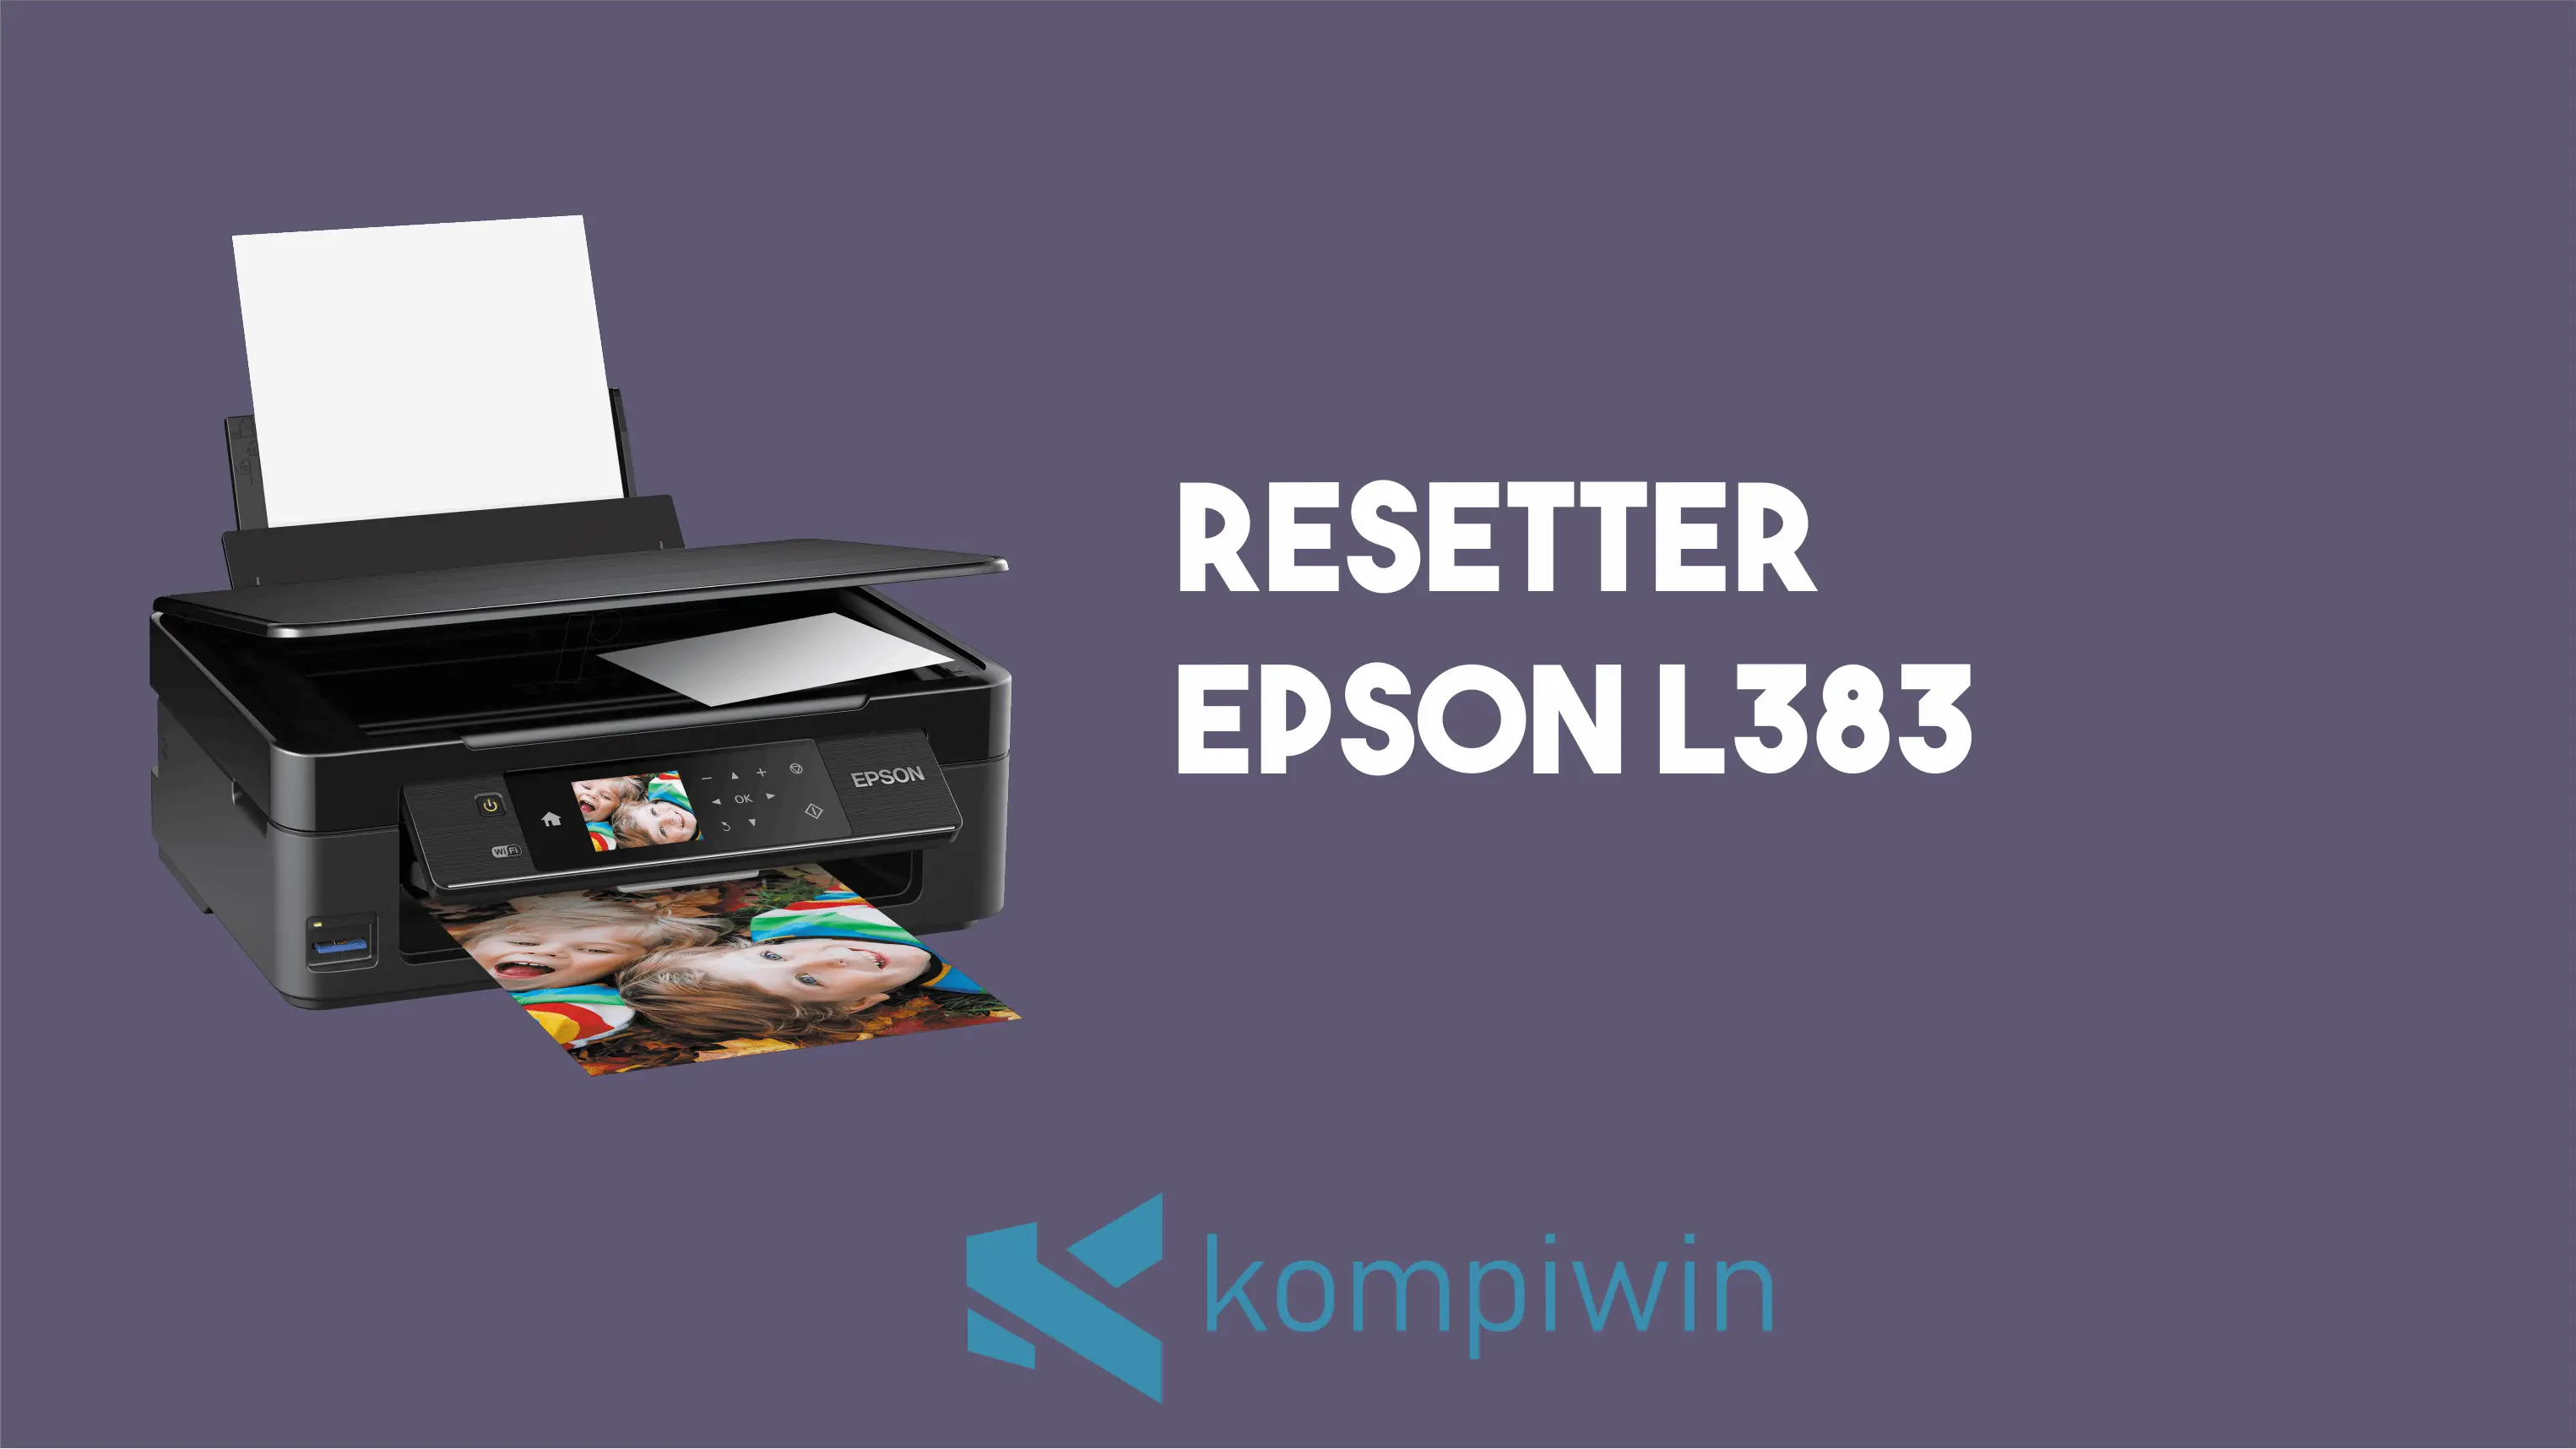 Resetter Epson L383